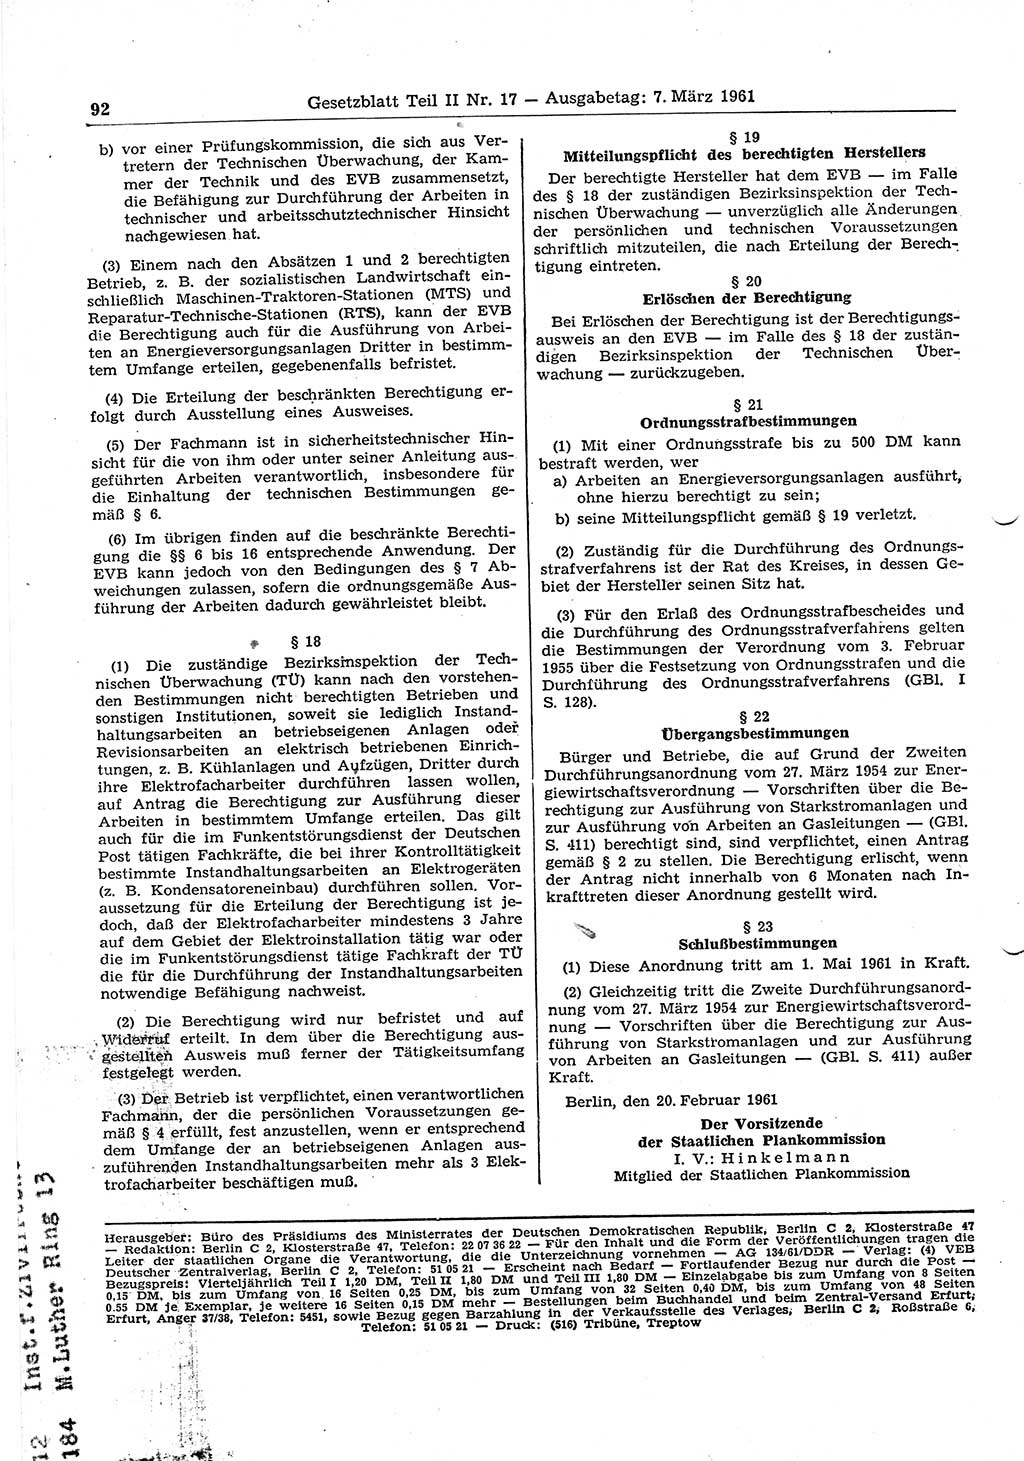 Gesetzblatt (GBl.) der Deutschen Demokratischen Republik (DDR) Teil ⅠⅠ 1961, Seite 92 (GBl. DDR ⅠⅠ 1961, S. 92)